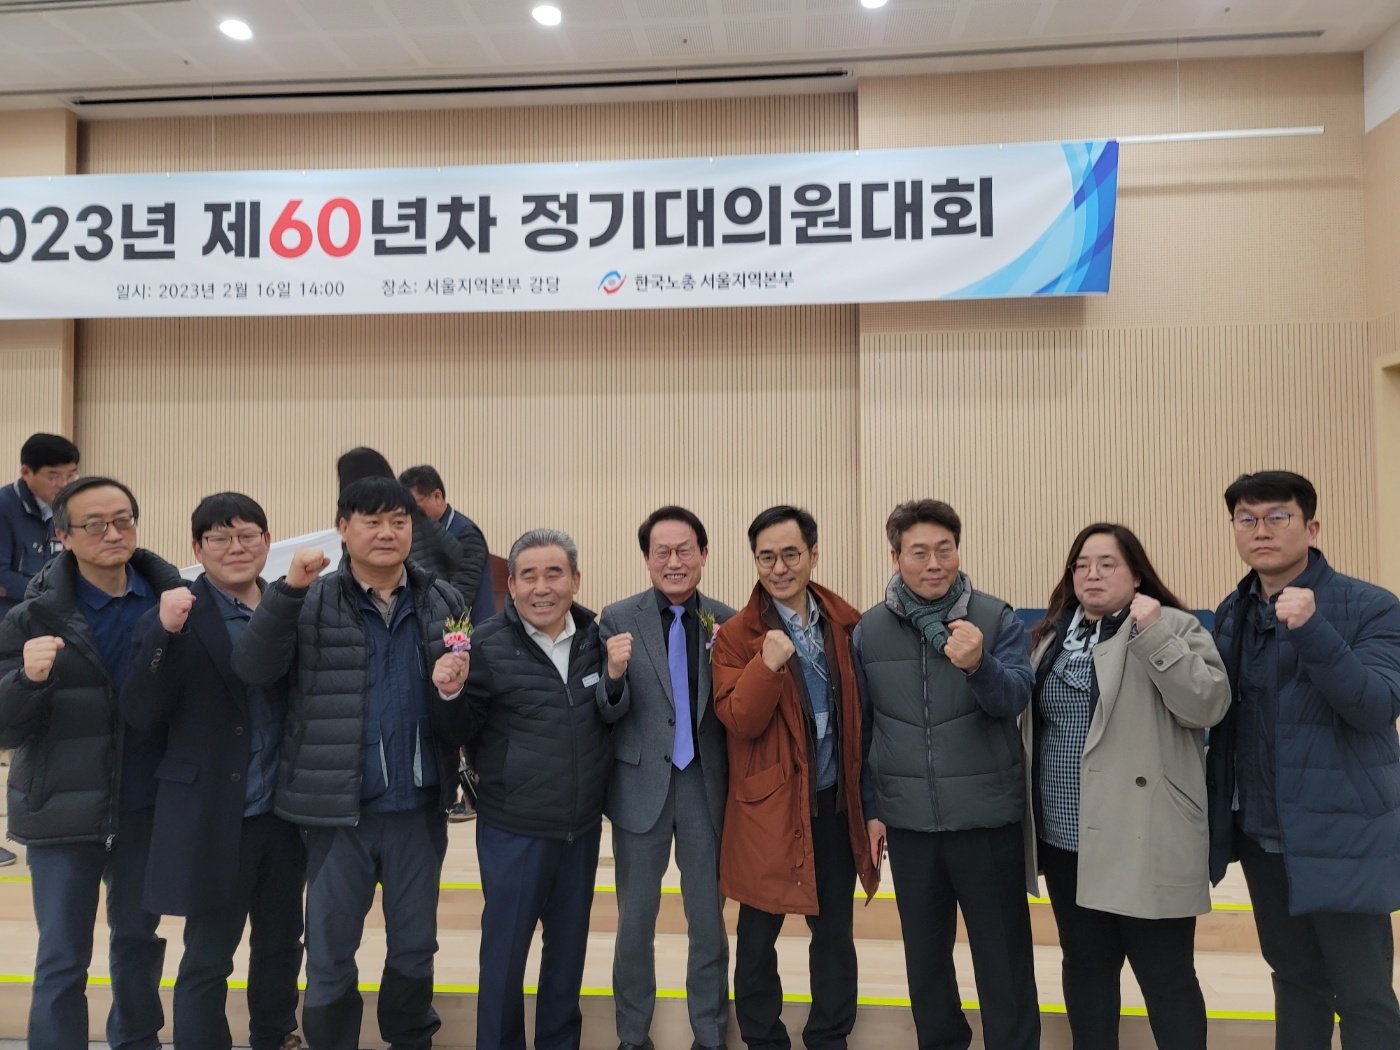 서울노총 제60년차 정기대의원대회 참석(2023.2.16.목)